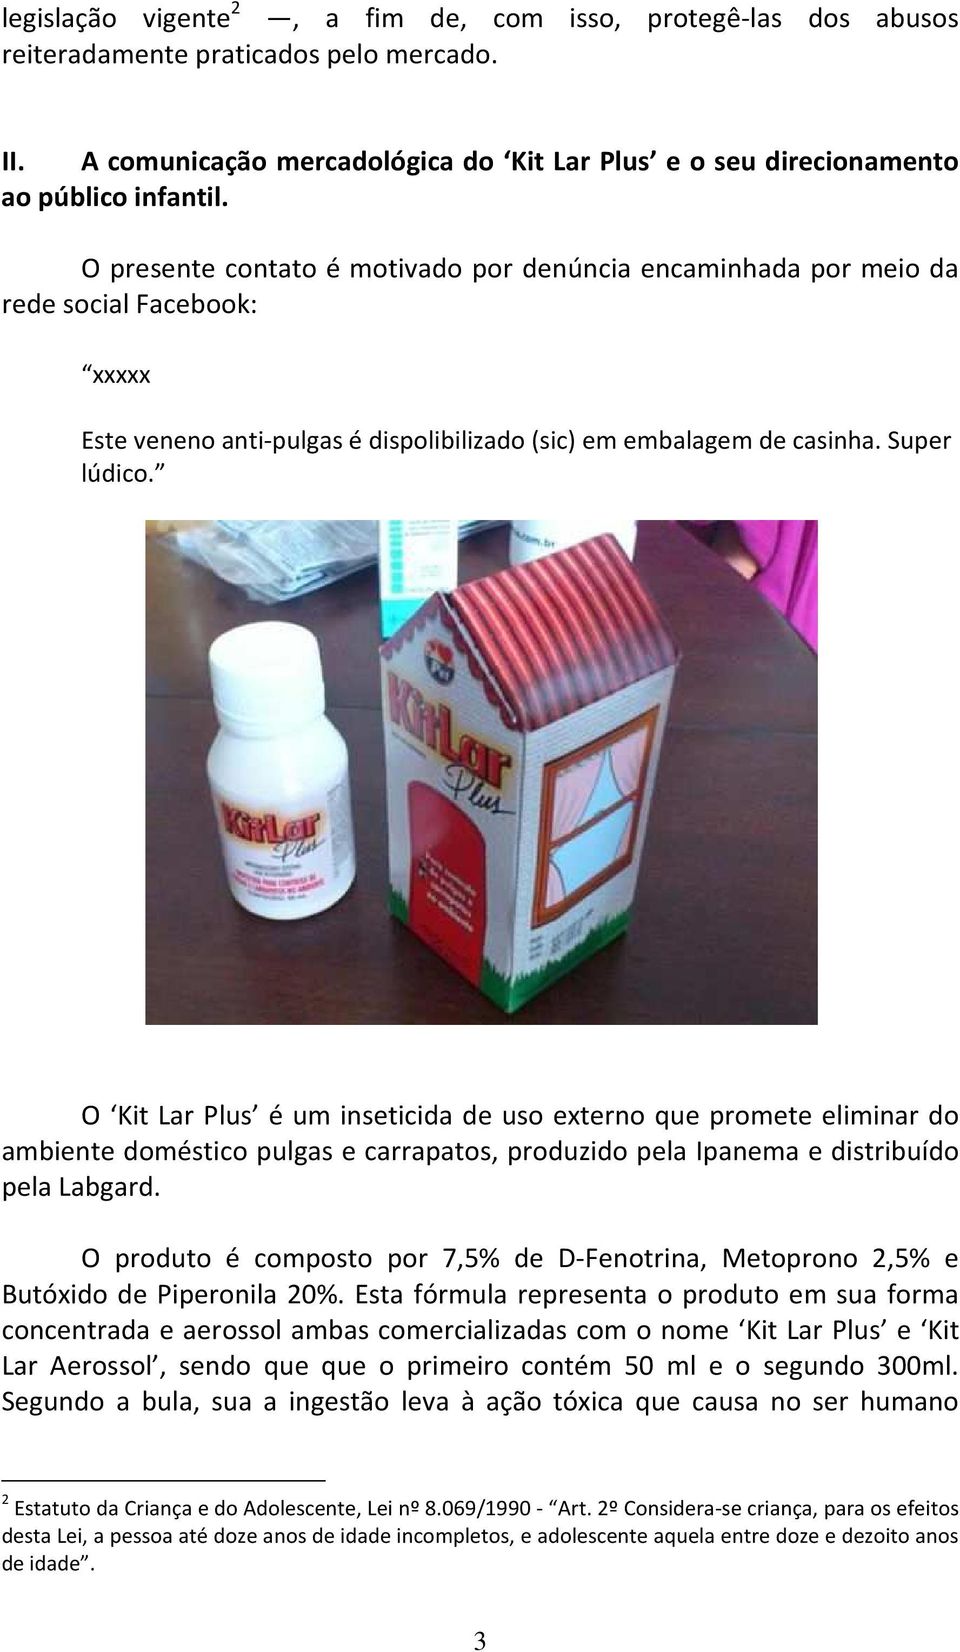 O Kit Lar Plus é um inseticida de uso externo que promete eliminar do ambiente doméstico pulgas e carrapatos, produzido pela Ipanema e distribuído pela Labgard.